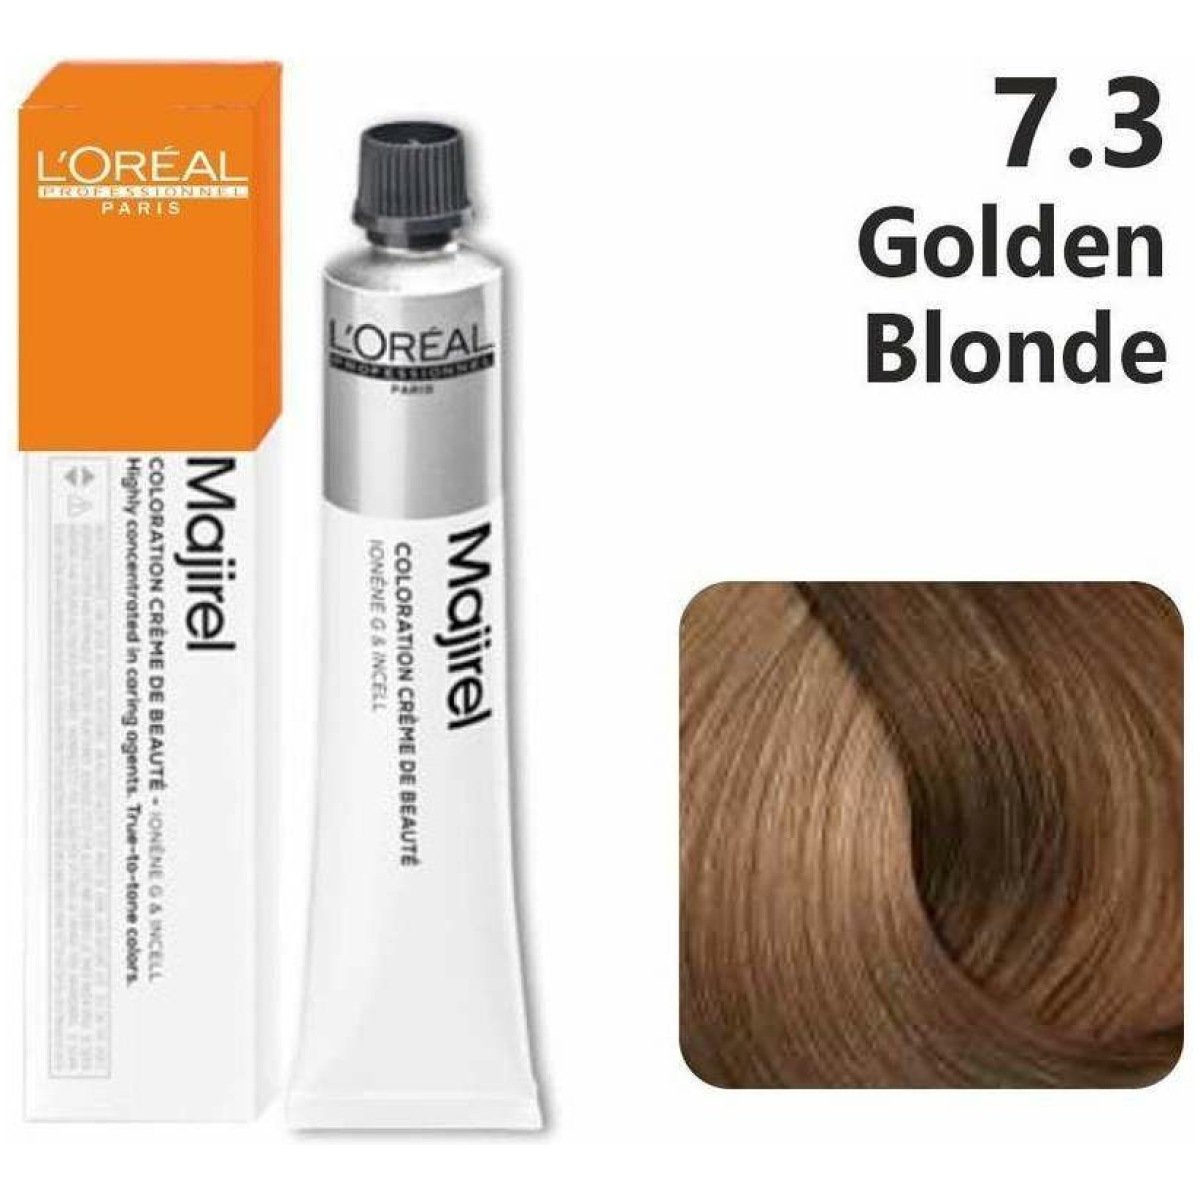 L'Oreal Professionnel Majirel Hair Color 50G 7.3 Golden Blonde